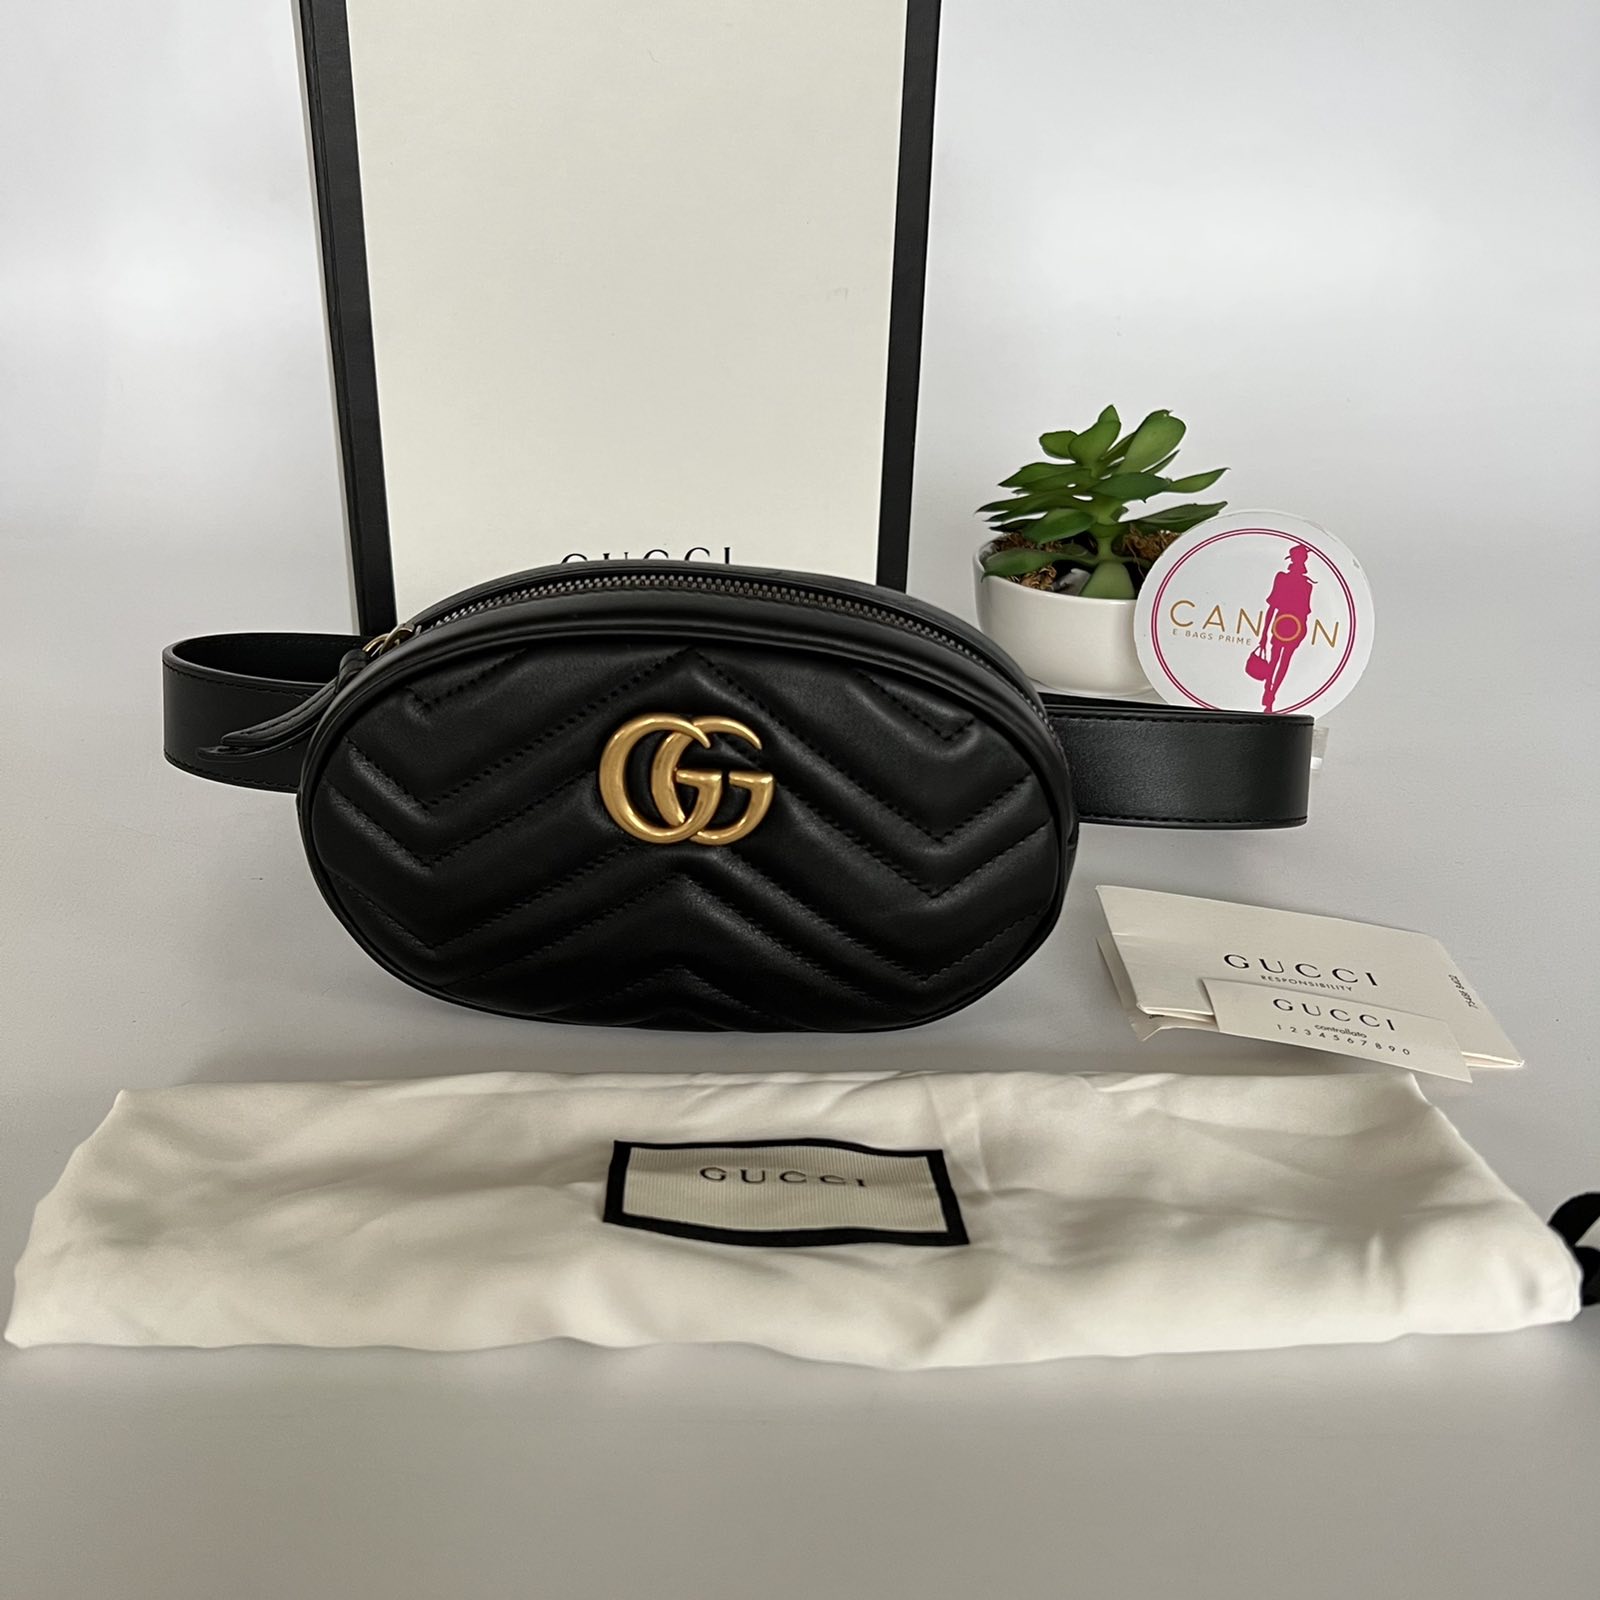 New Authentic Gucci GG Marmont Matelassé Leather Belt Bag Size 85 cm